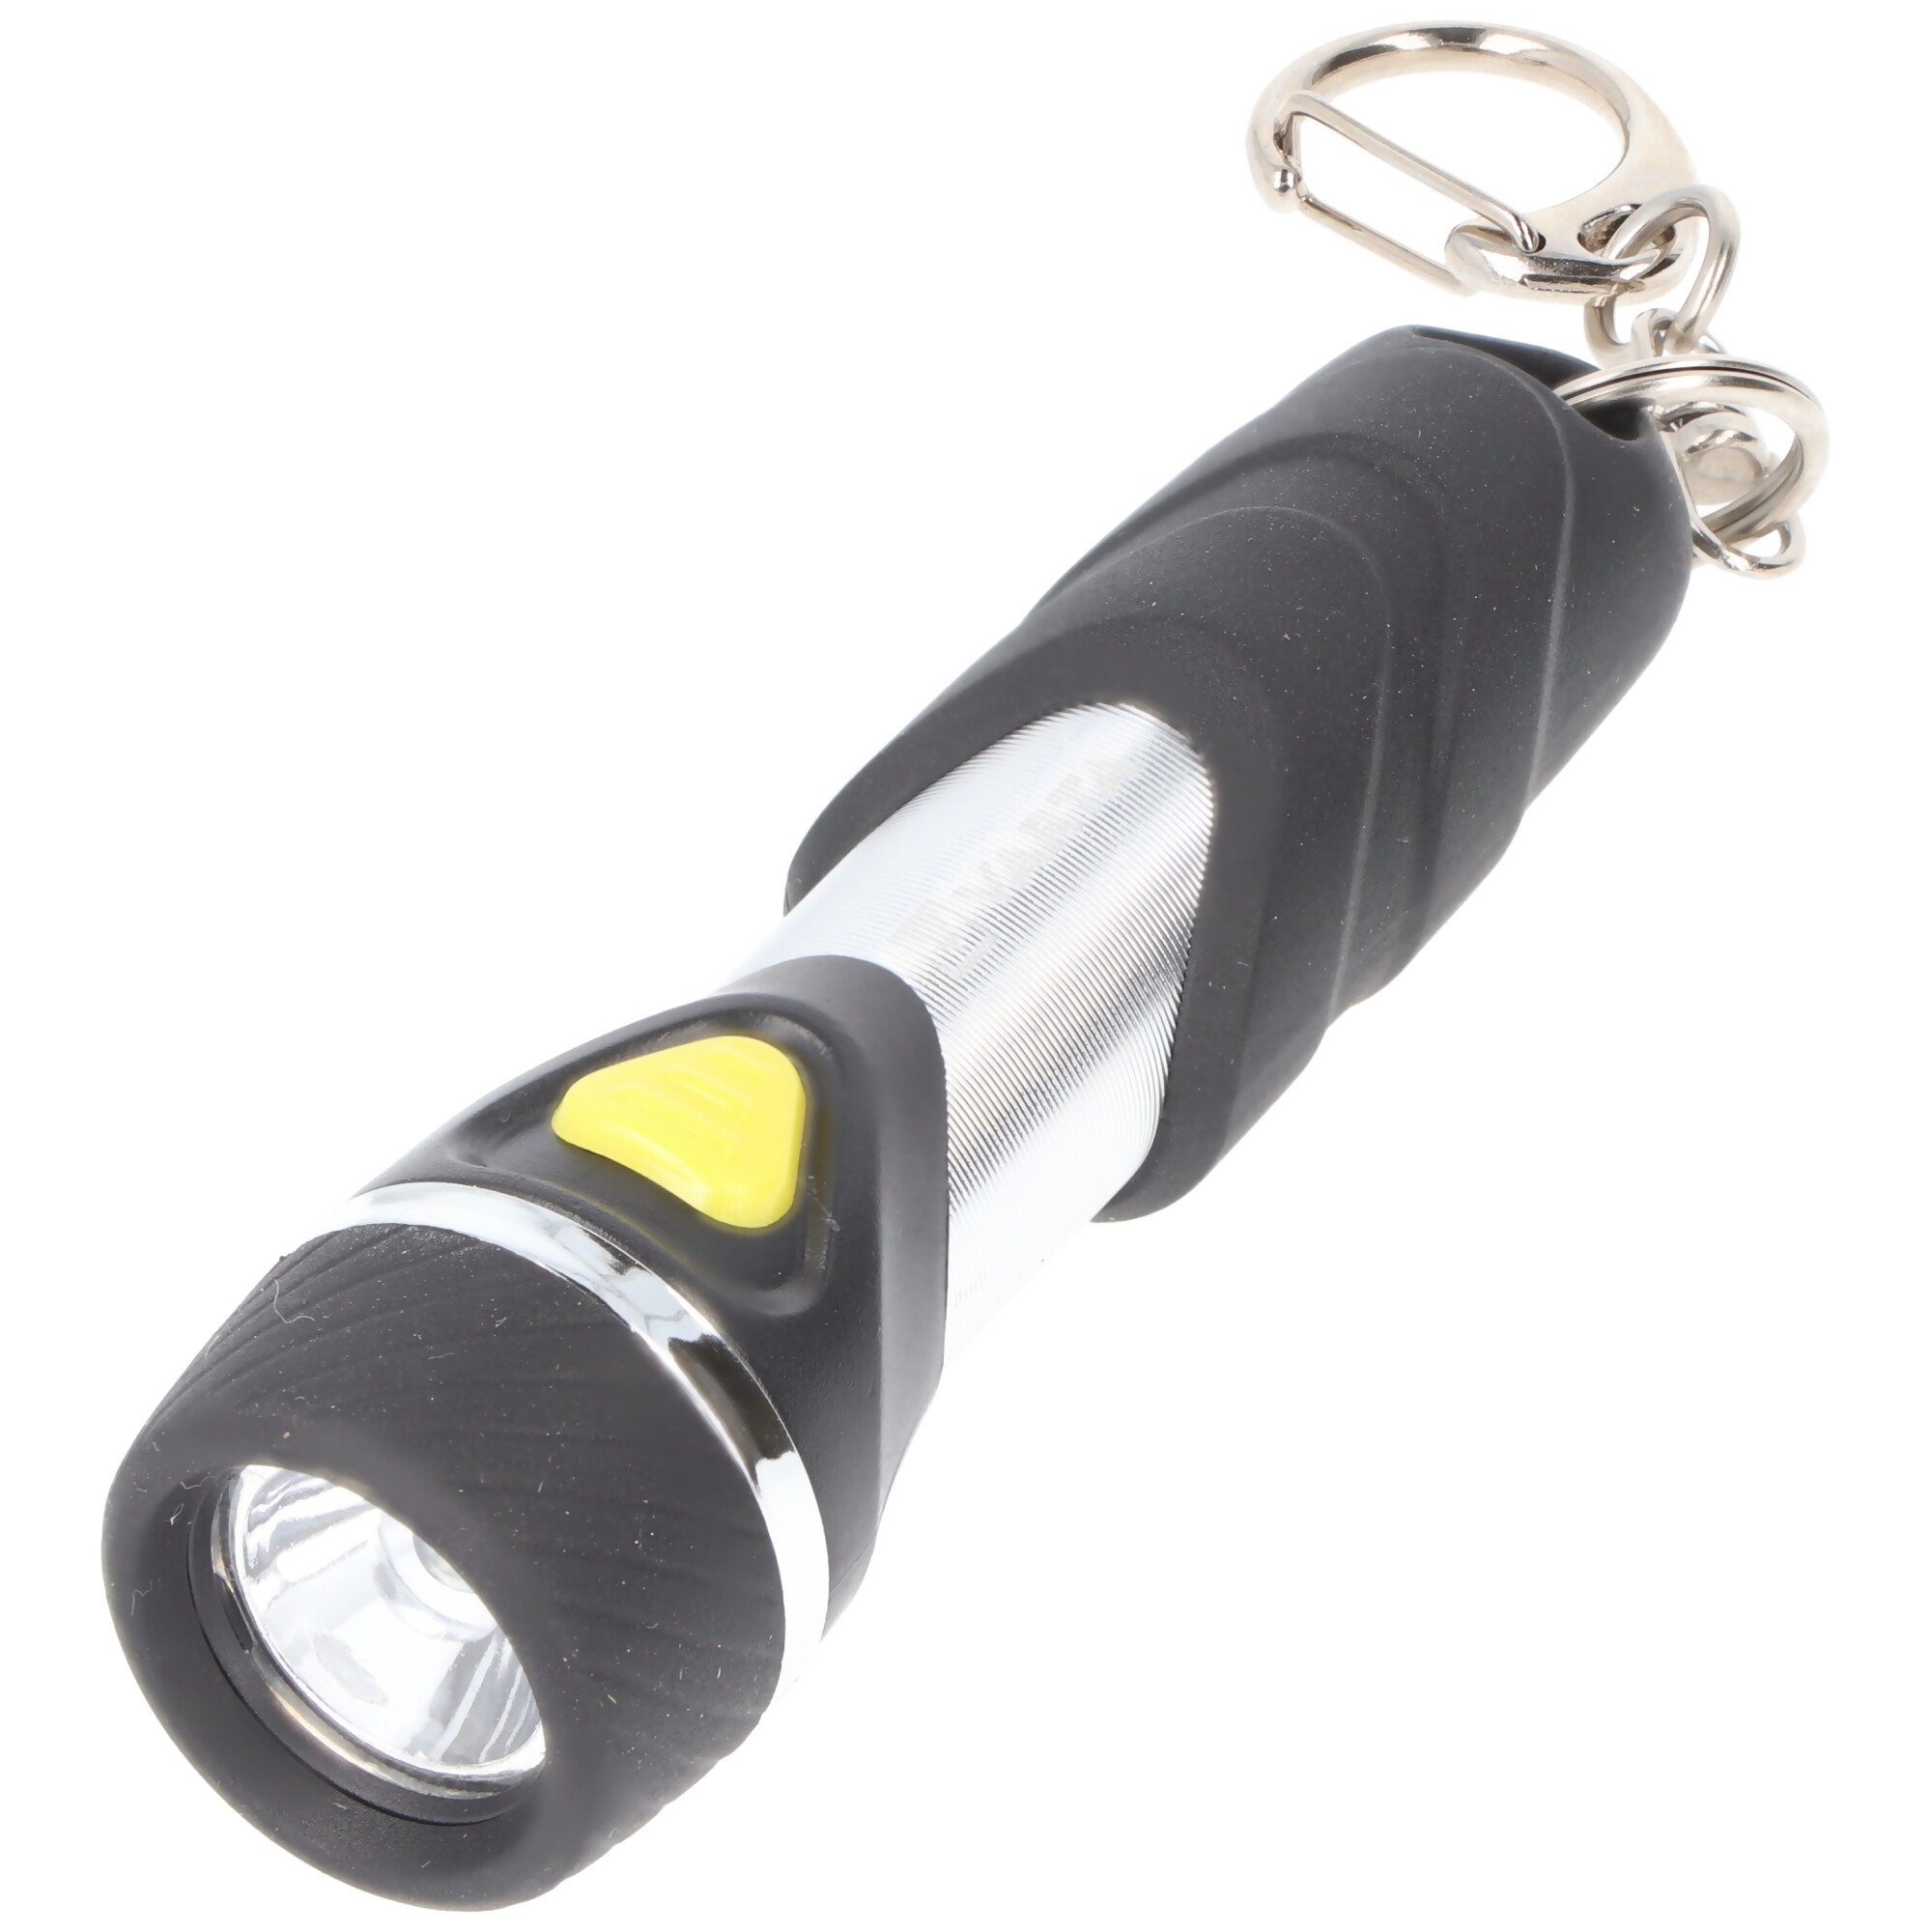 Varta LED Taschenlampe Day Light, Key Chain 12lm, inkl. 1x Batterie  Alkaline AAA, Retail Blister | LED-Taschenlampen | LEDs,Taschenlampen,  Lichttechnik | Akkushop-Austria